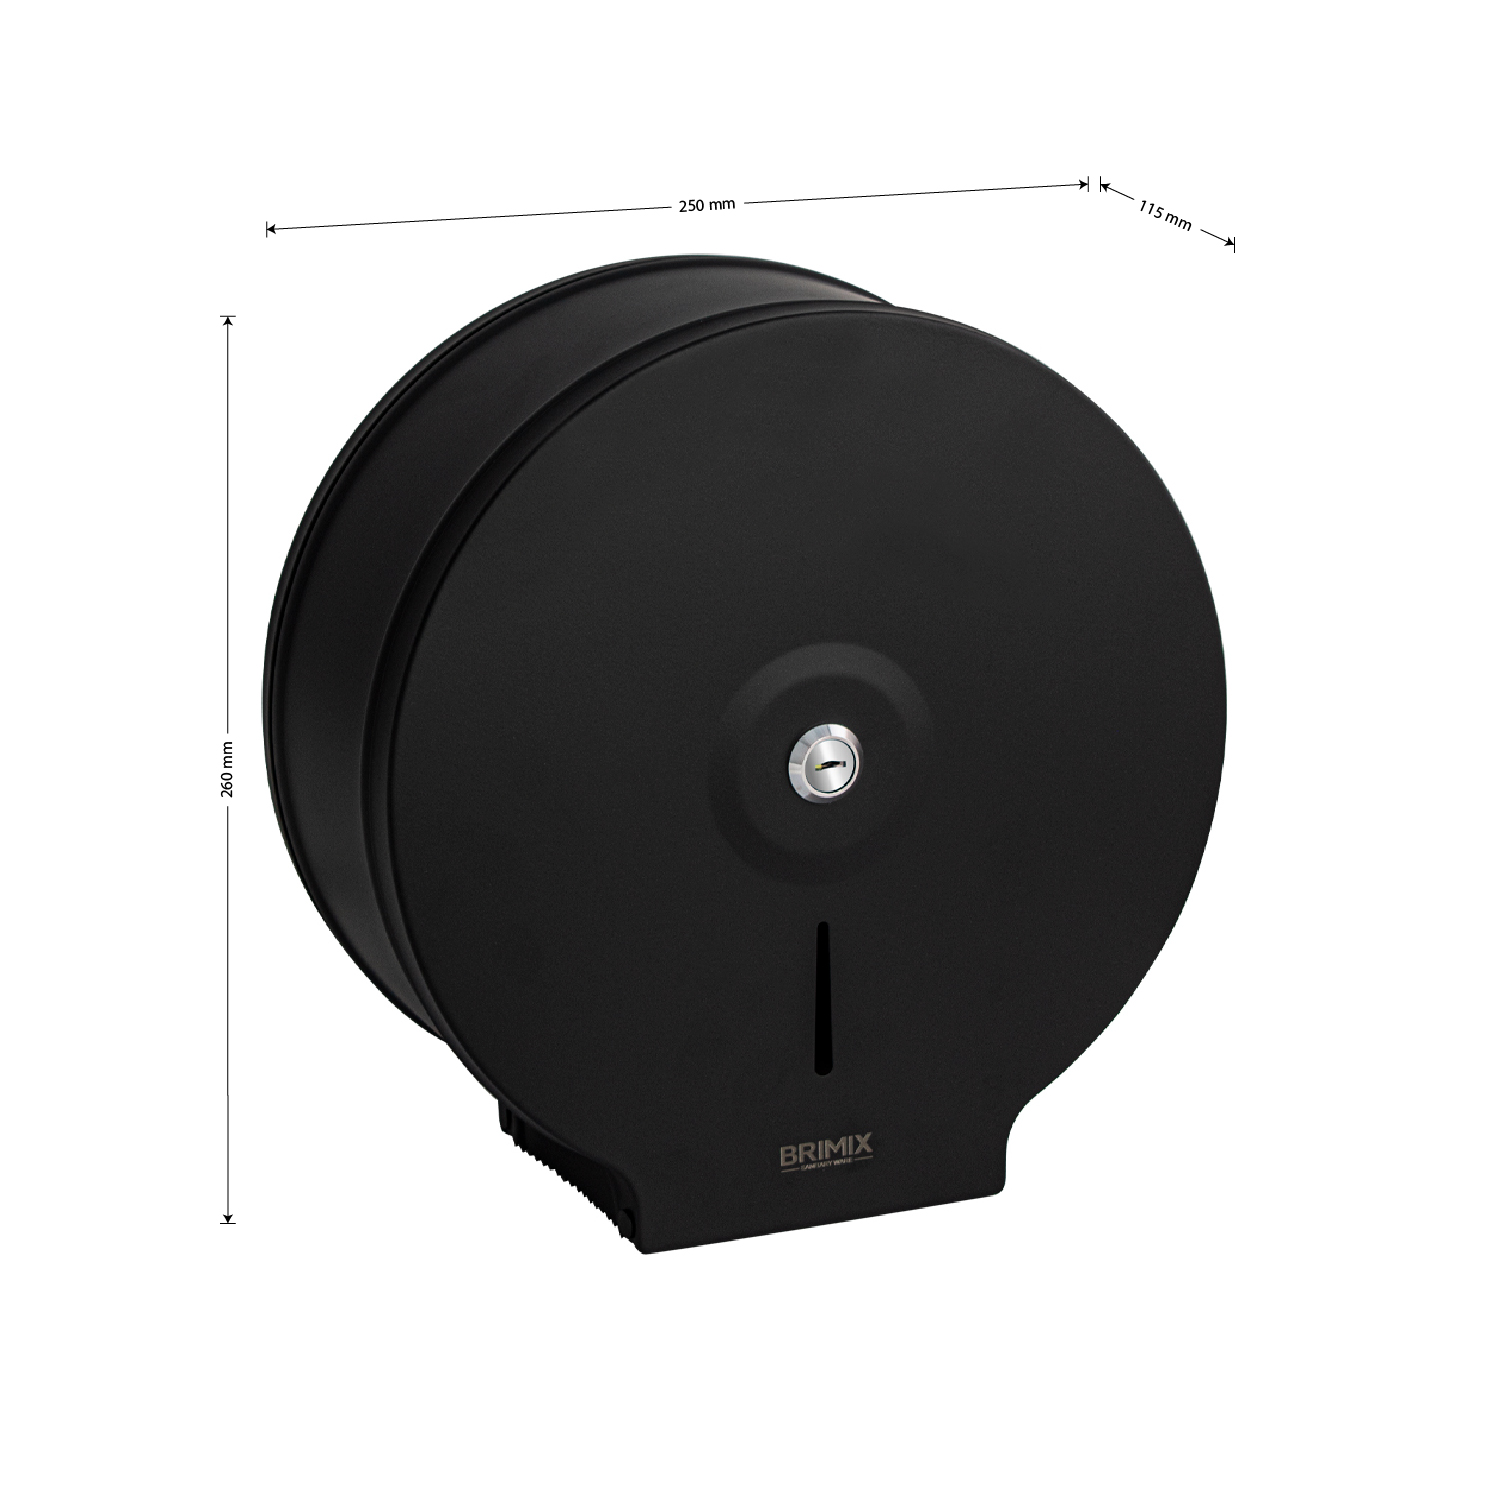 BRIMIX - Диспенсер для туалетной бумаги, с ключом - барабан, нержавеющая матовая сталь черного цвета